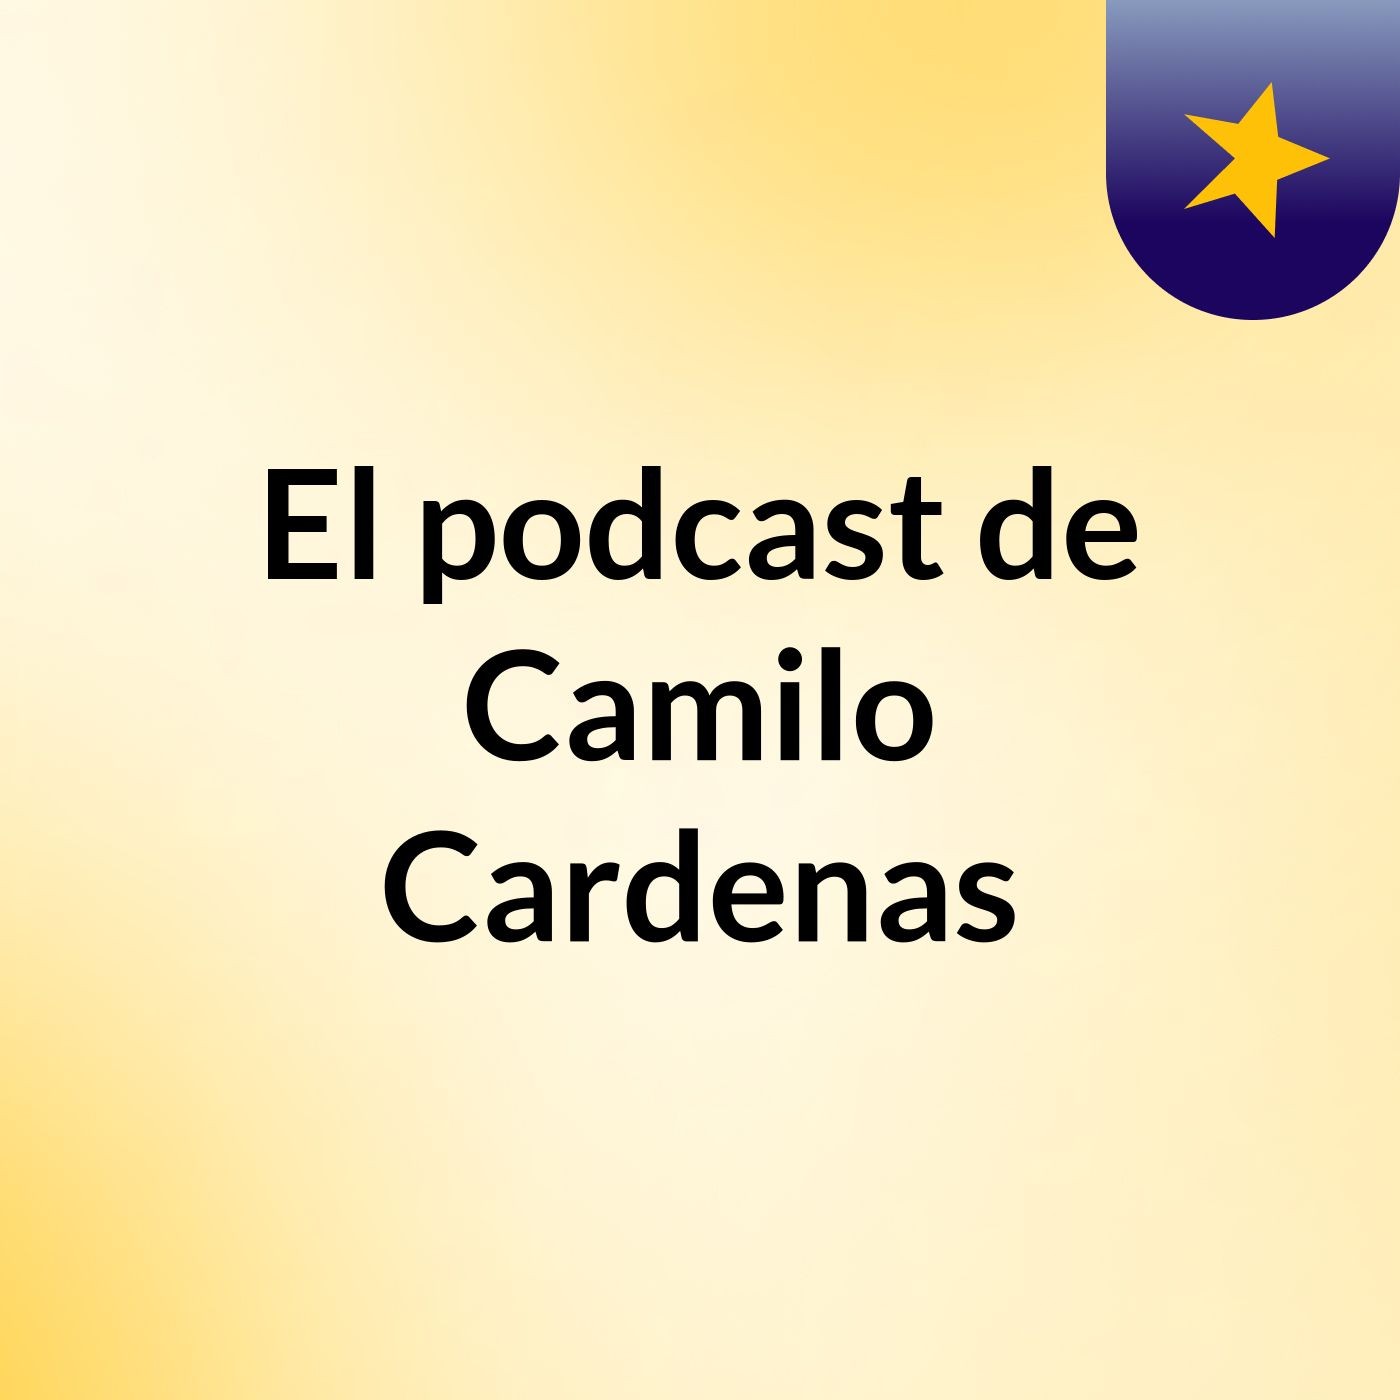 El podcast de Camilo Cardenas